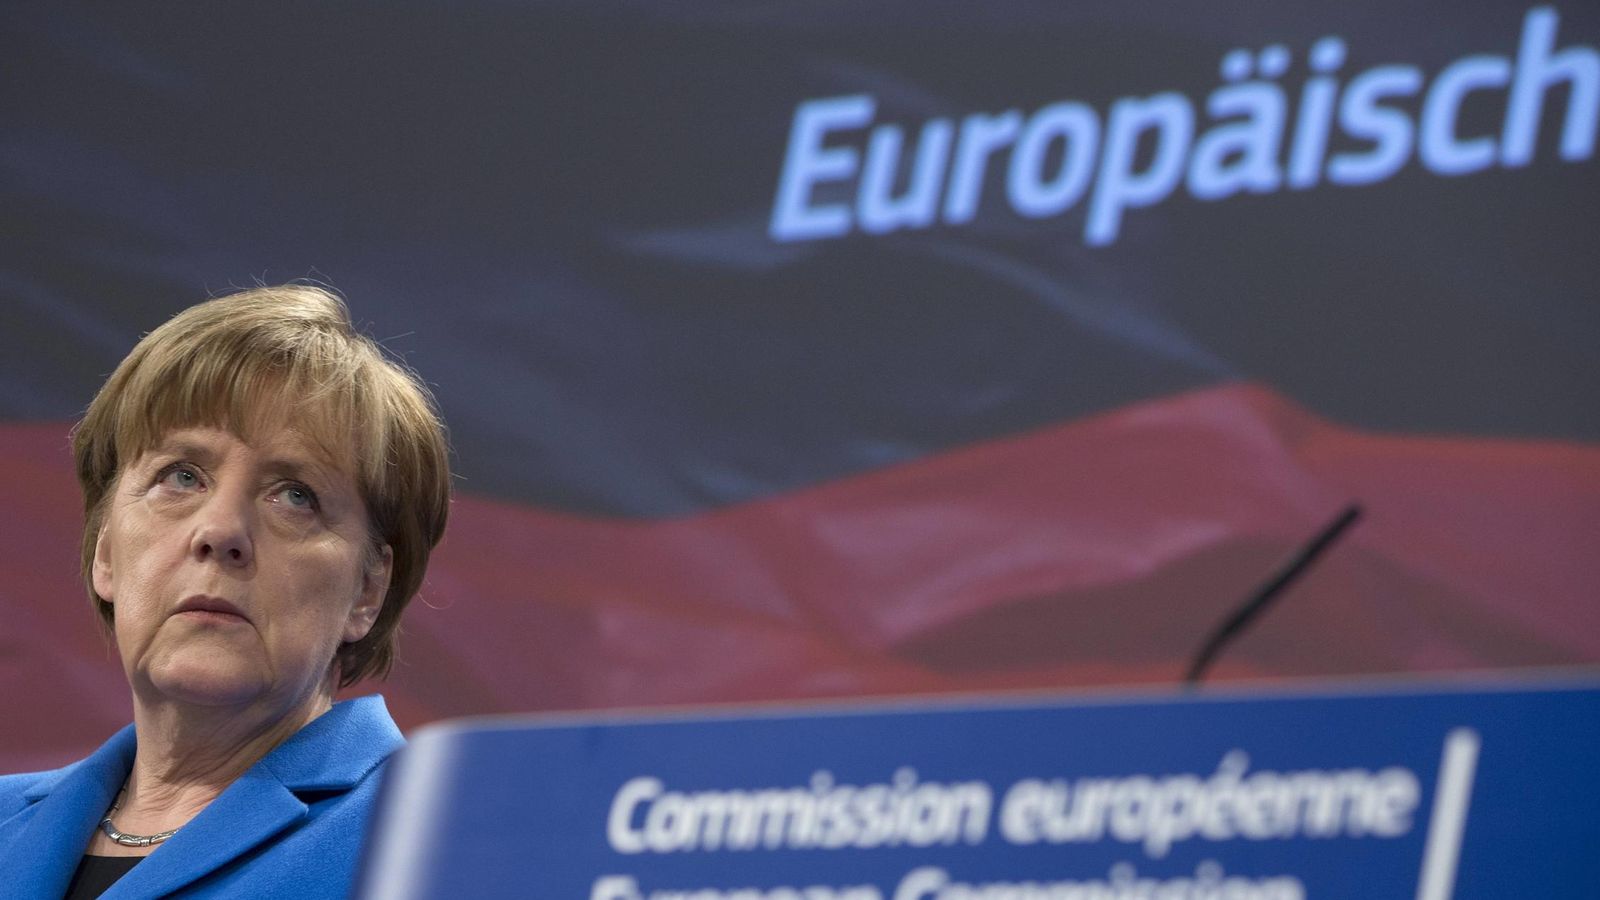 Foto: La canciler Angela Merkel durante un conferencia de prensa conjunta con Jean-Claude Juncker en Bruselas (Reuters).